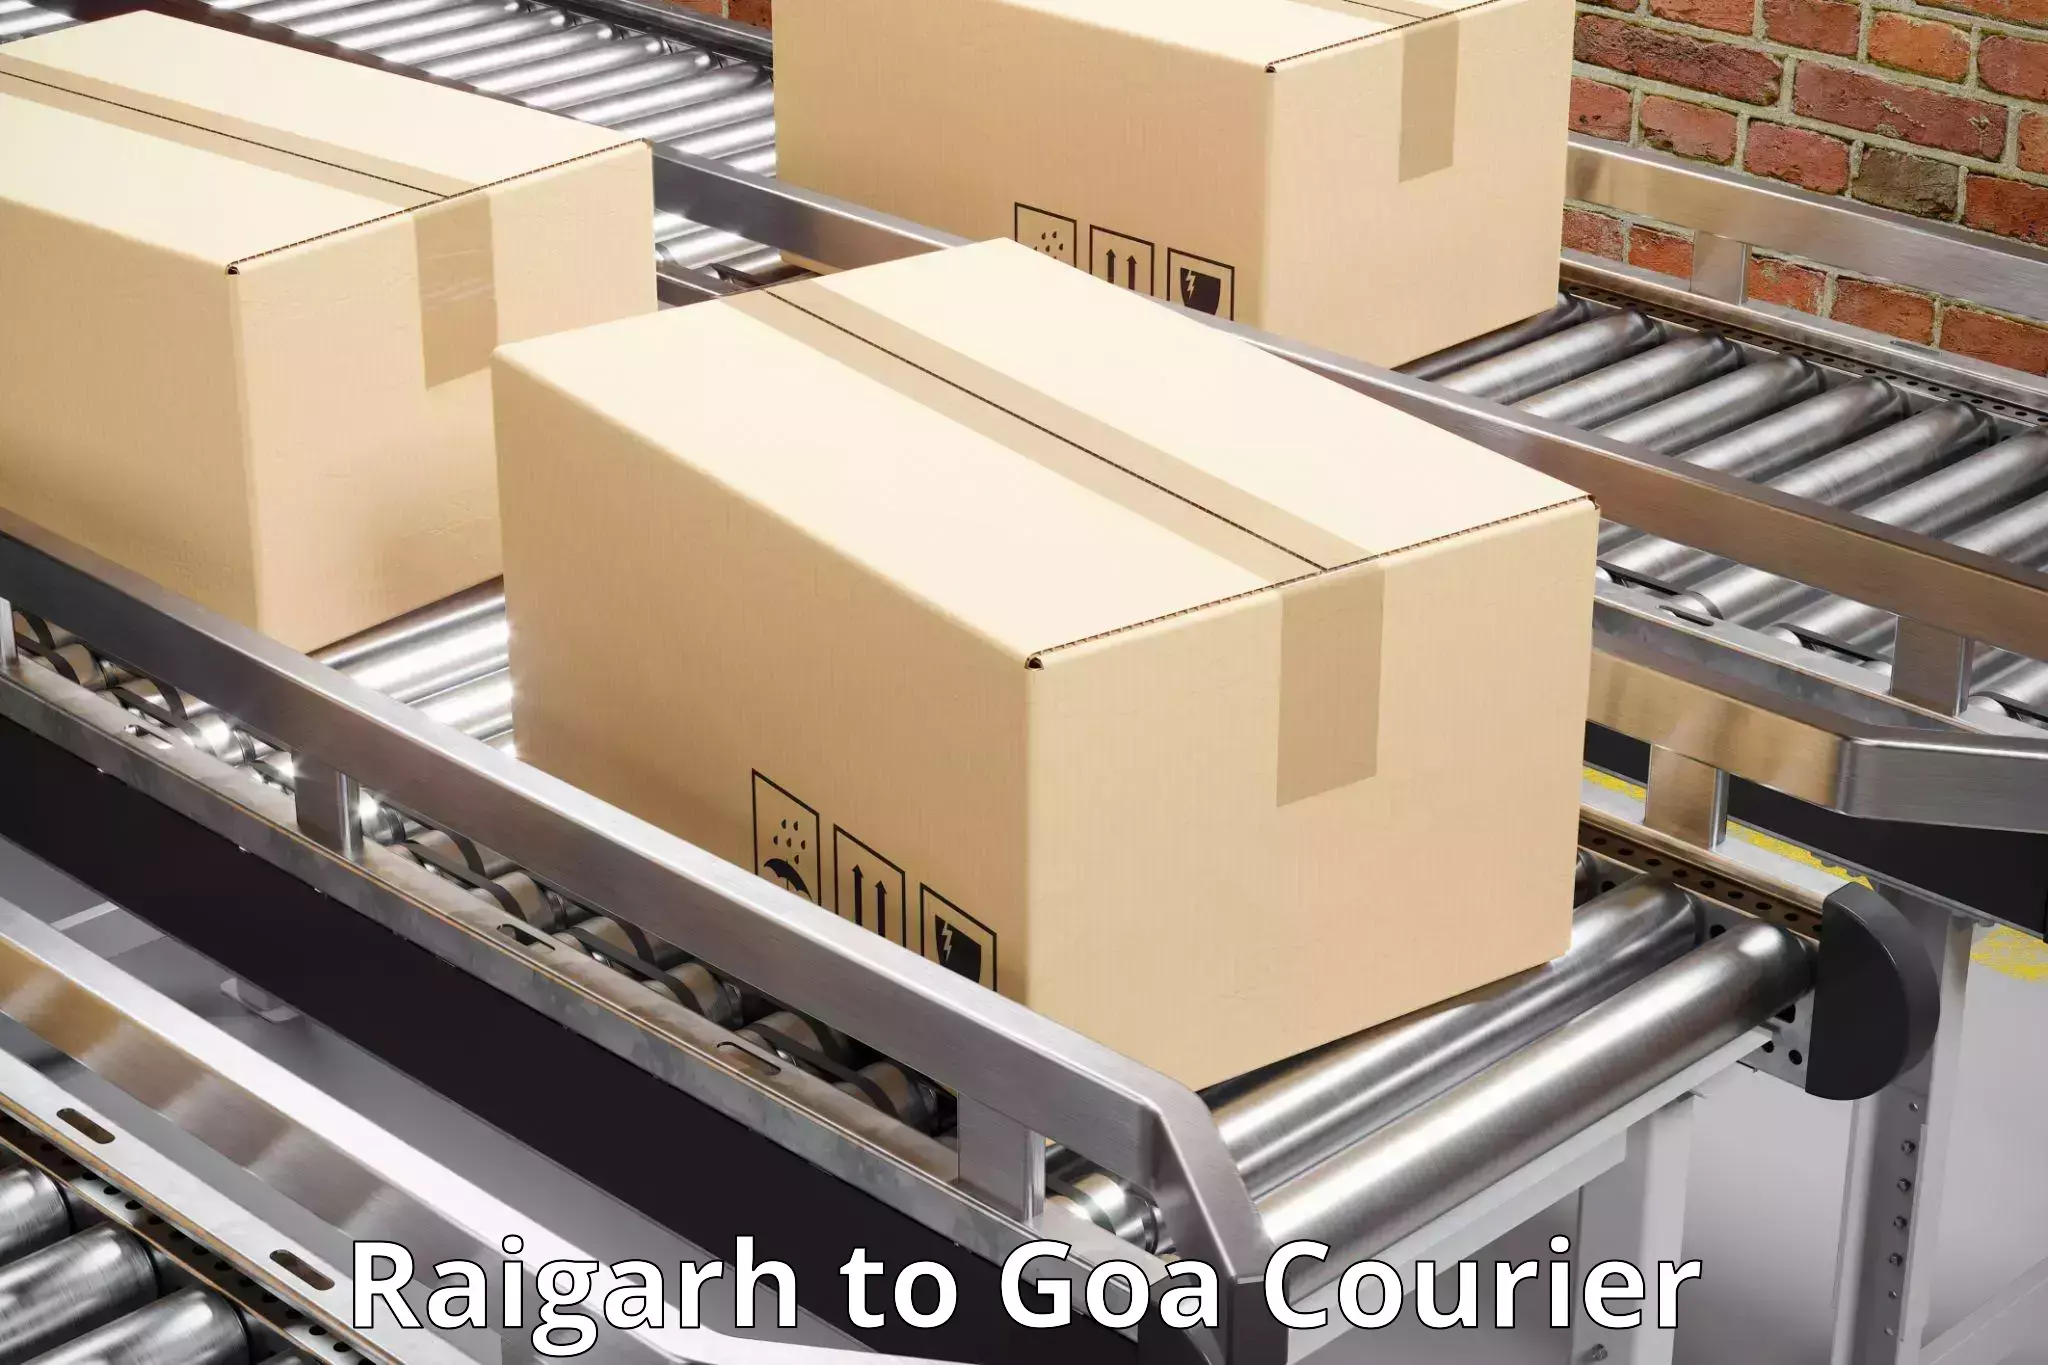 Local delivery service Raigarh to Goa